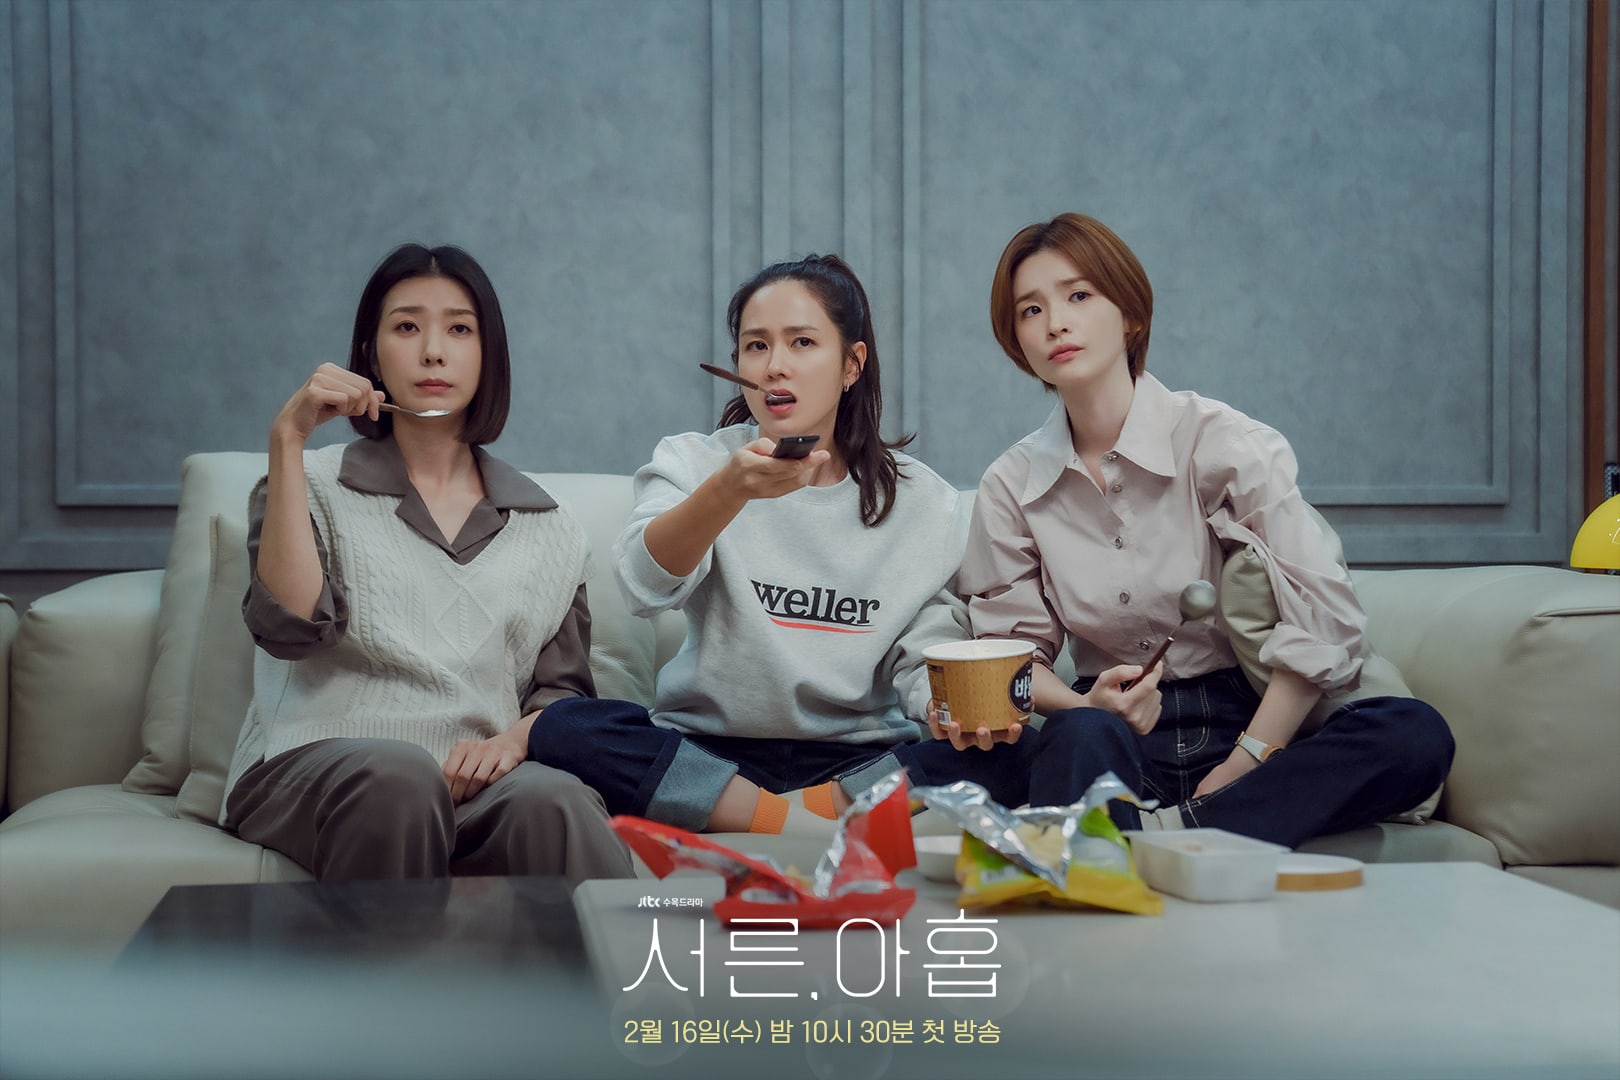 Rating phim mới của Son Ye Jin sau “Hạ cánh nơi anh”: Người khen ổn áp, người kỳ vọng cao hơn